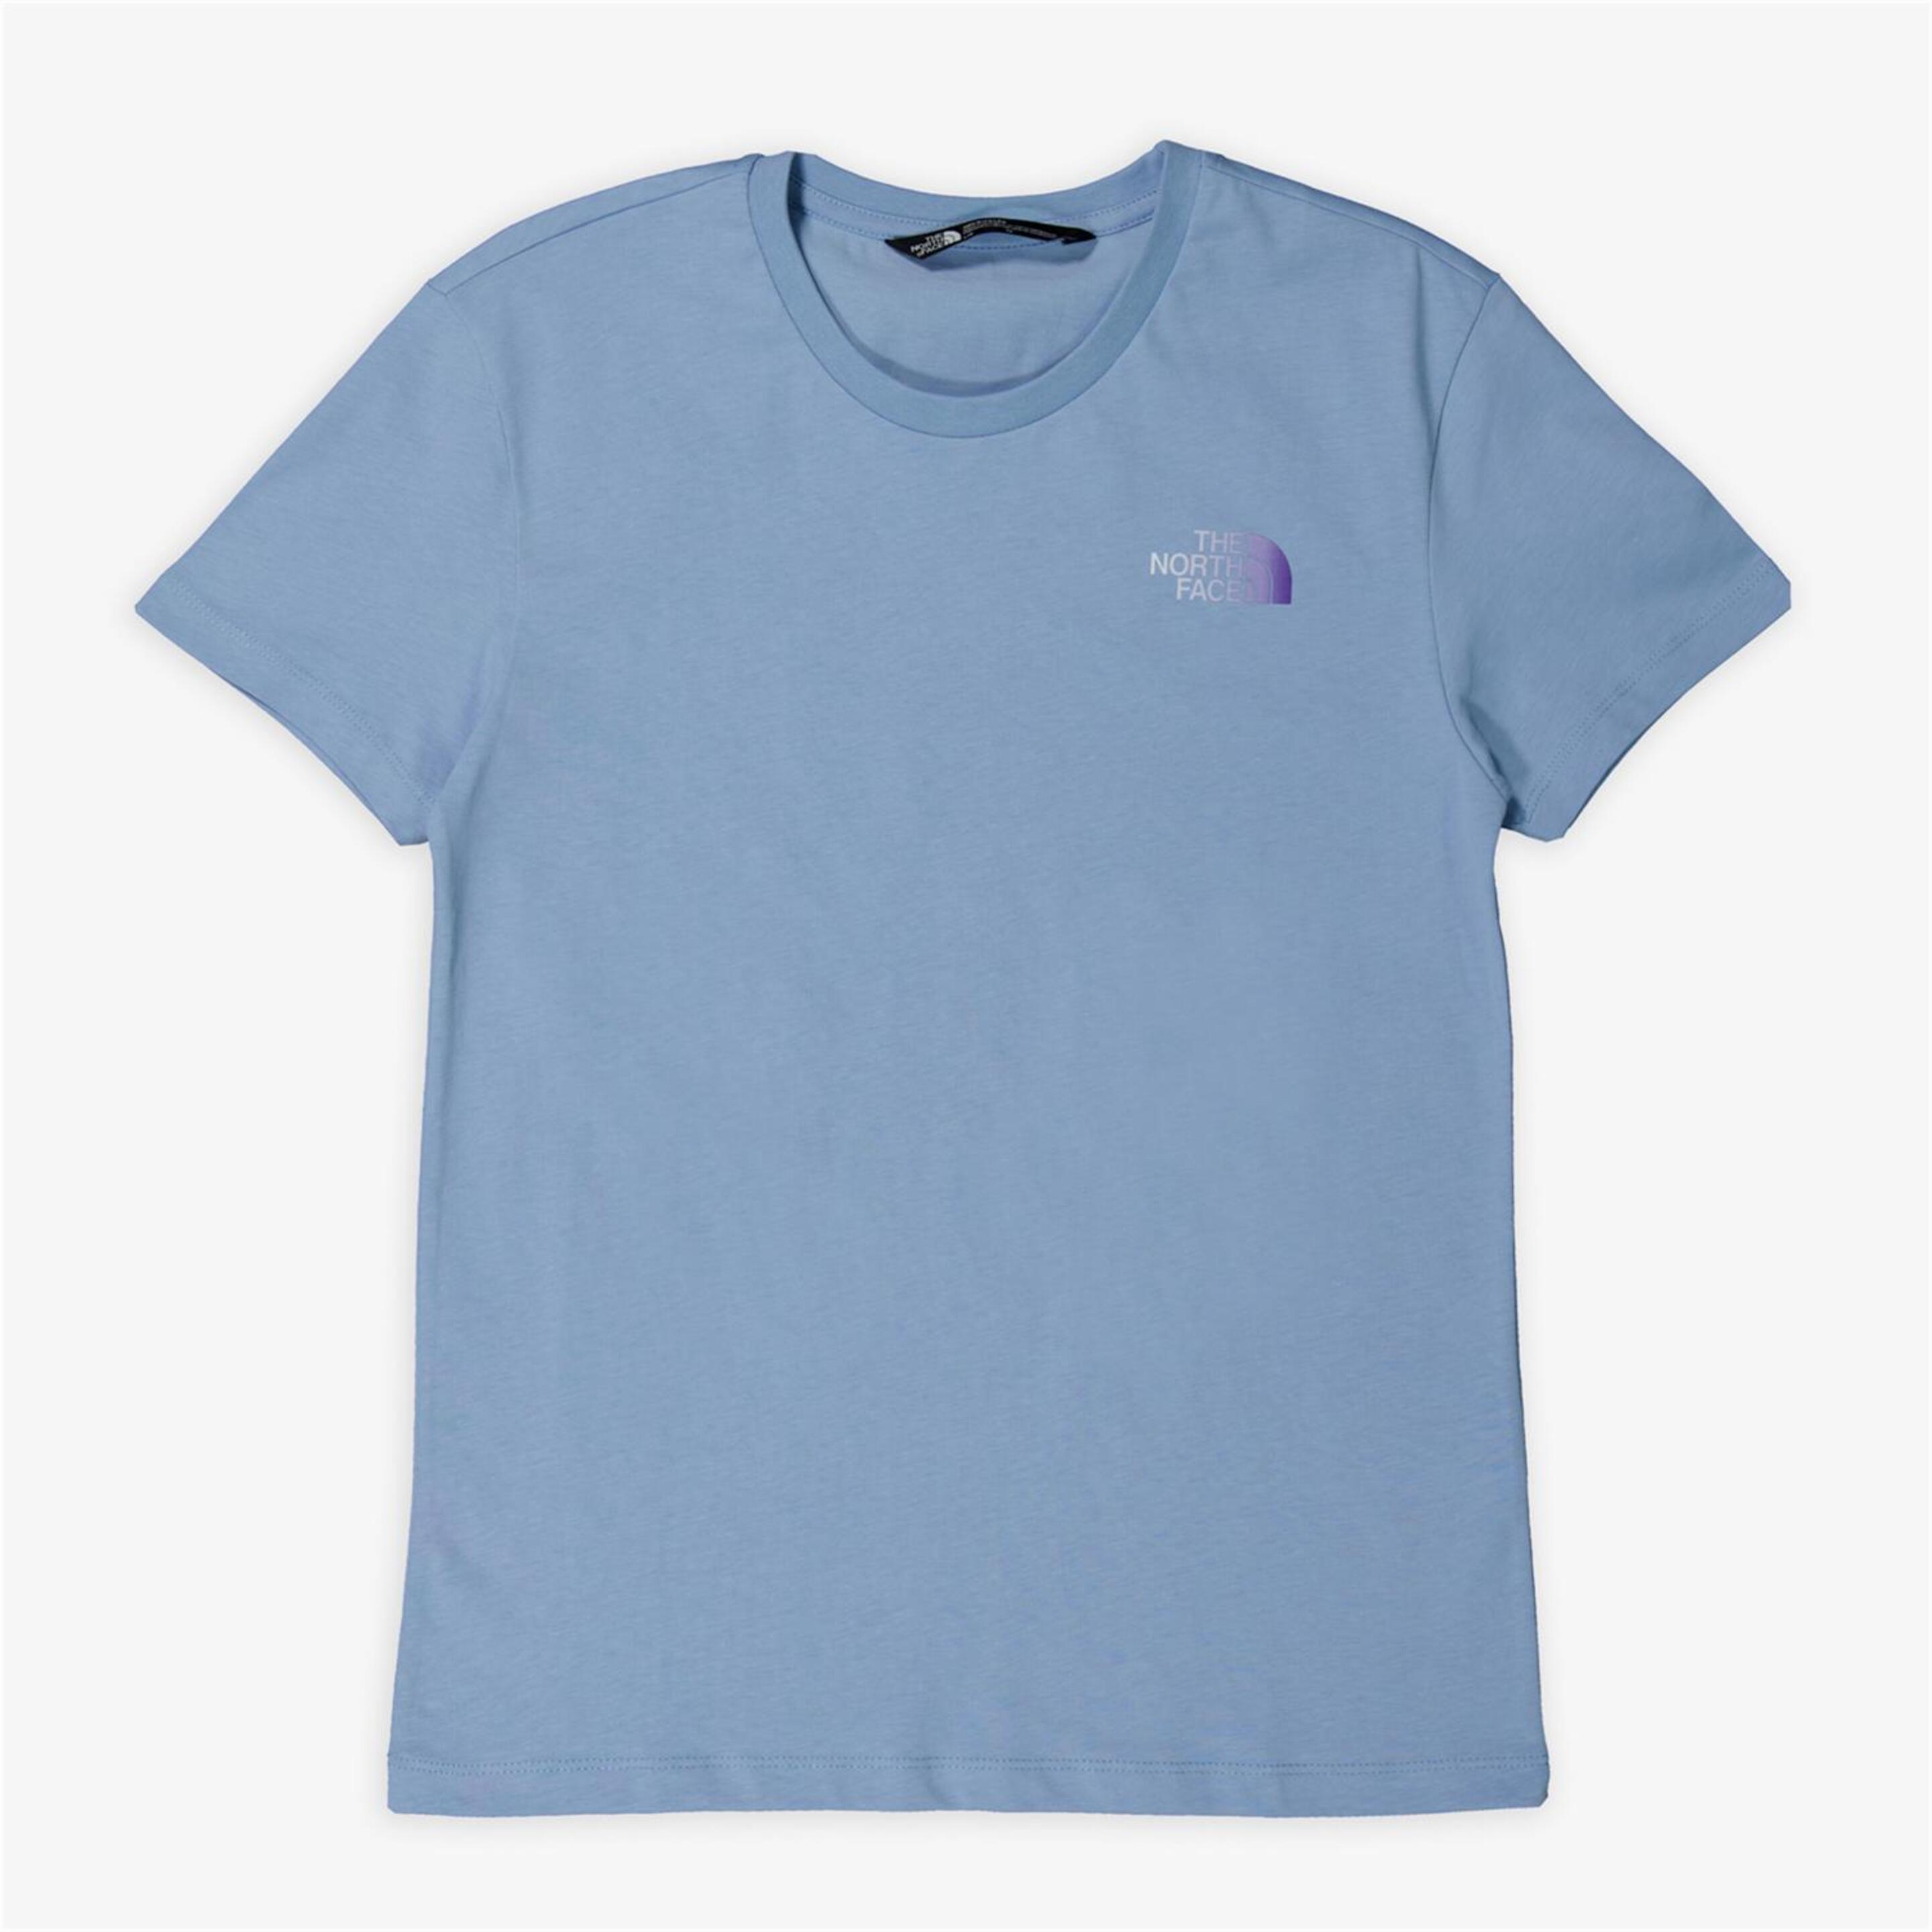 The North Face Relaxed Graphic 2 - azul - Camiseta Trekking Niña